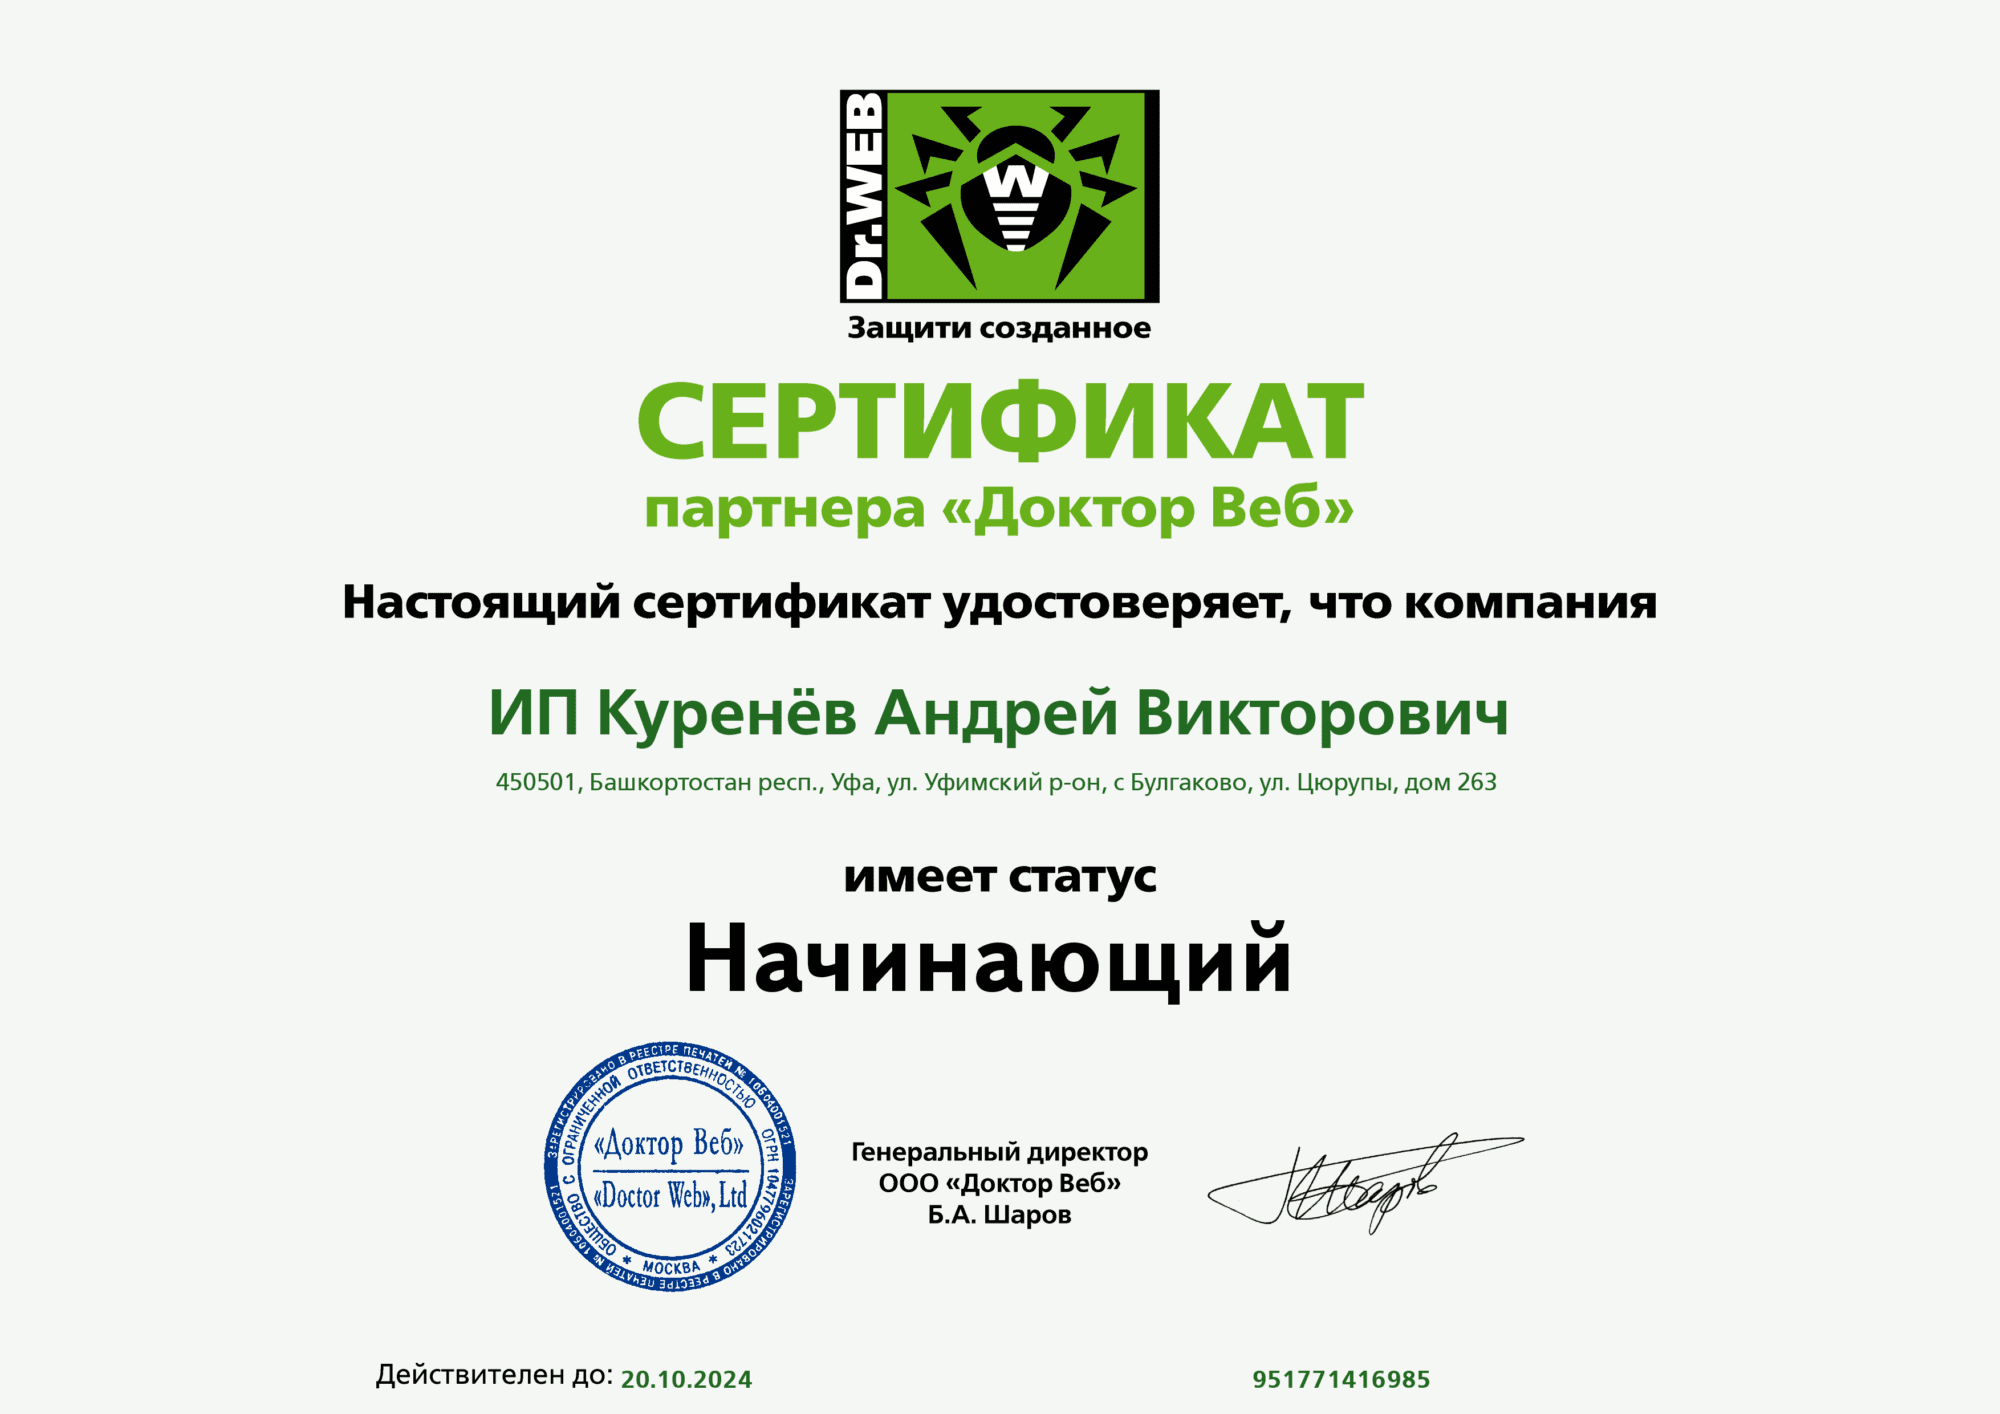 Сертификат партнера "Доктор Веб"